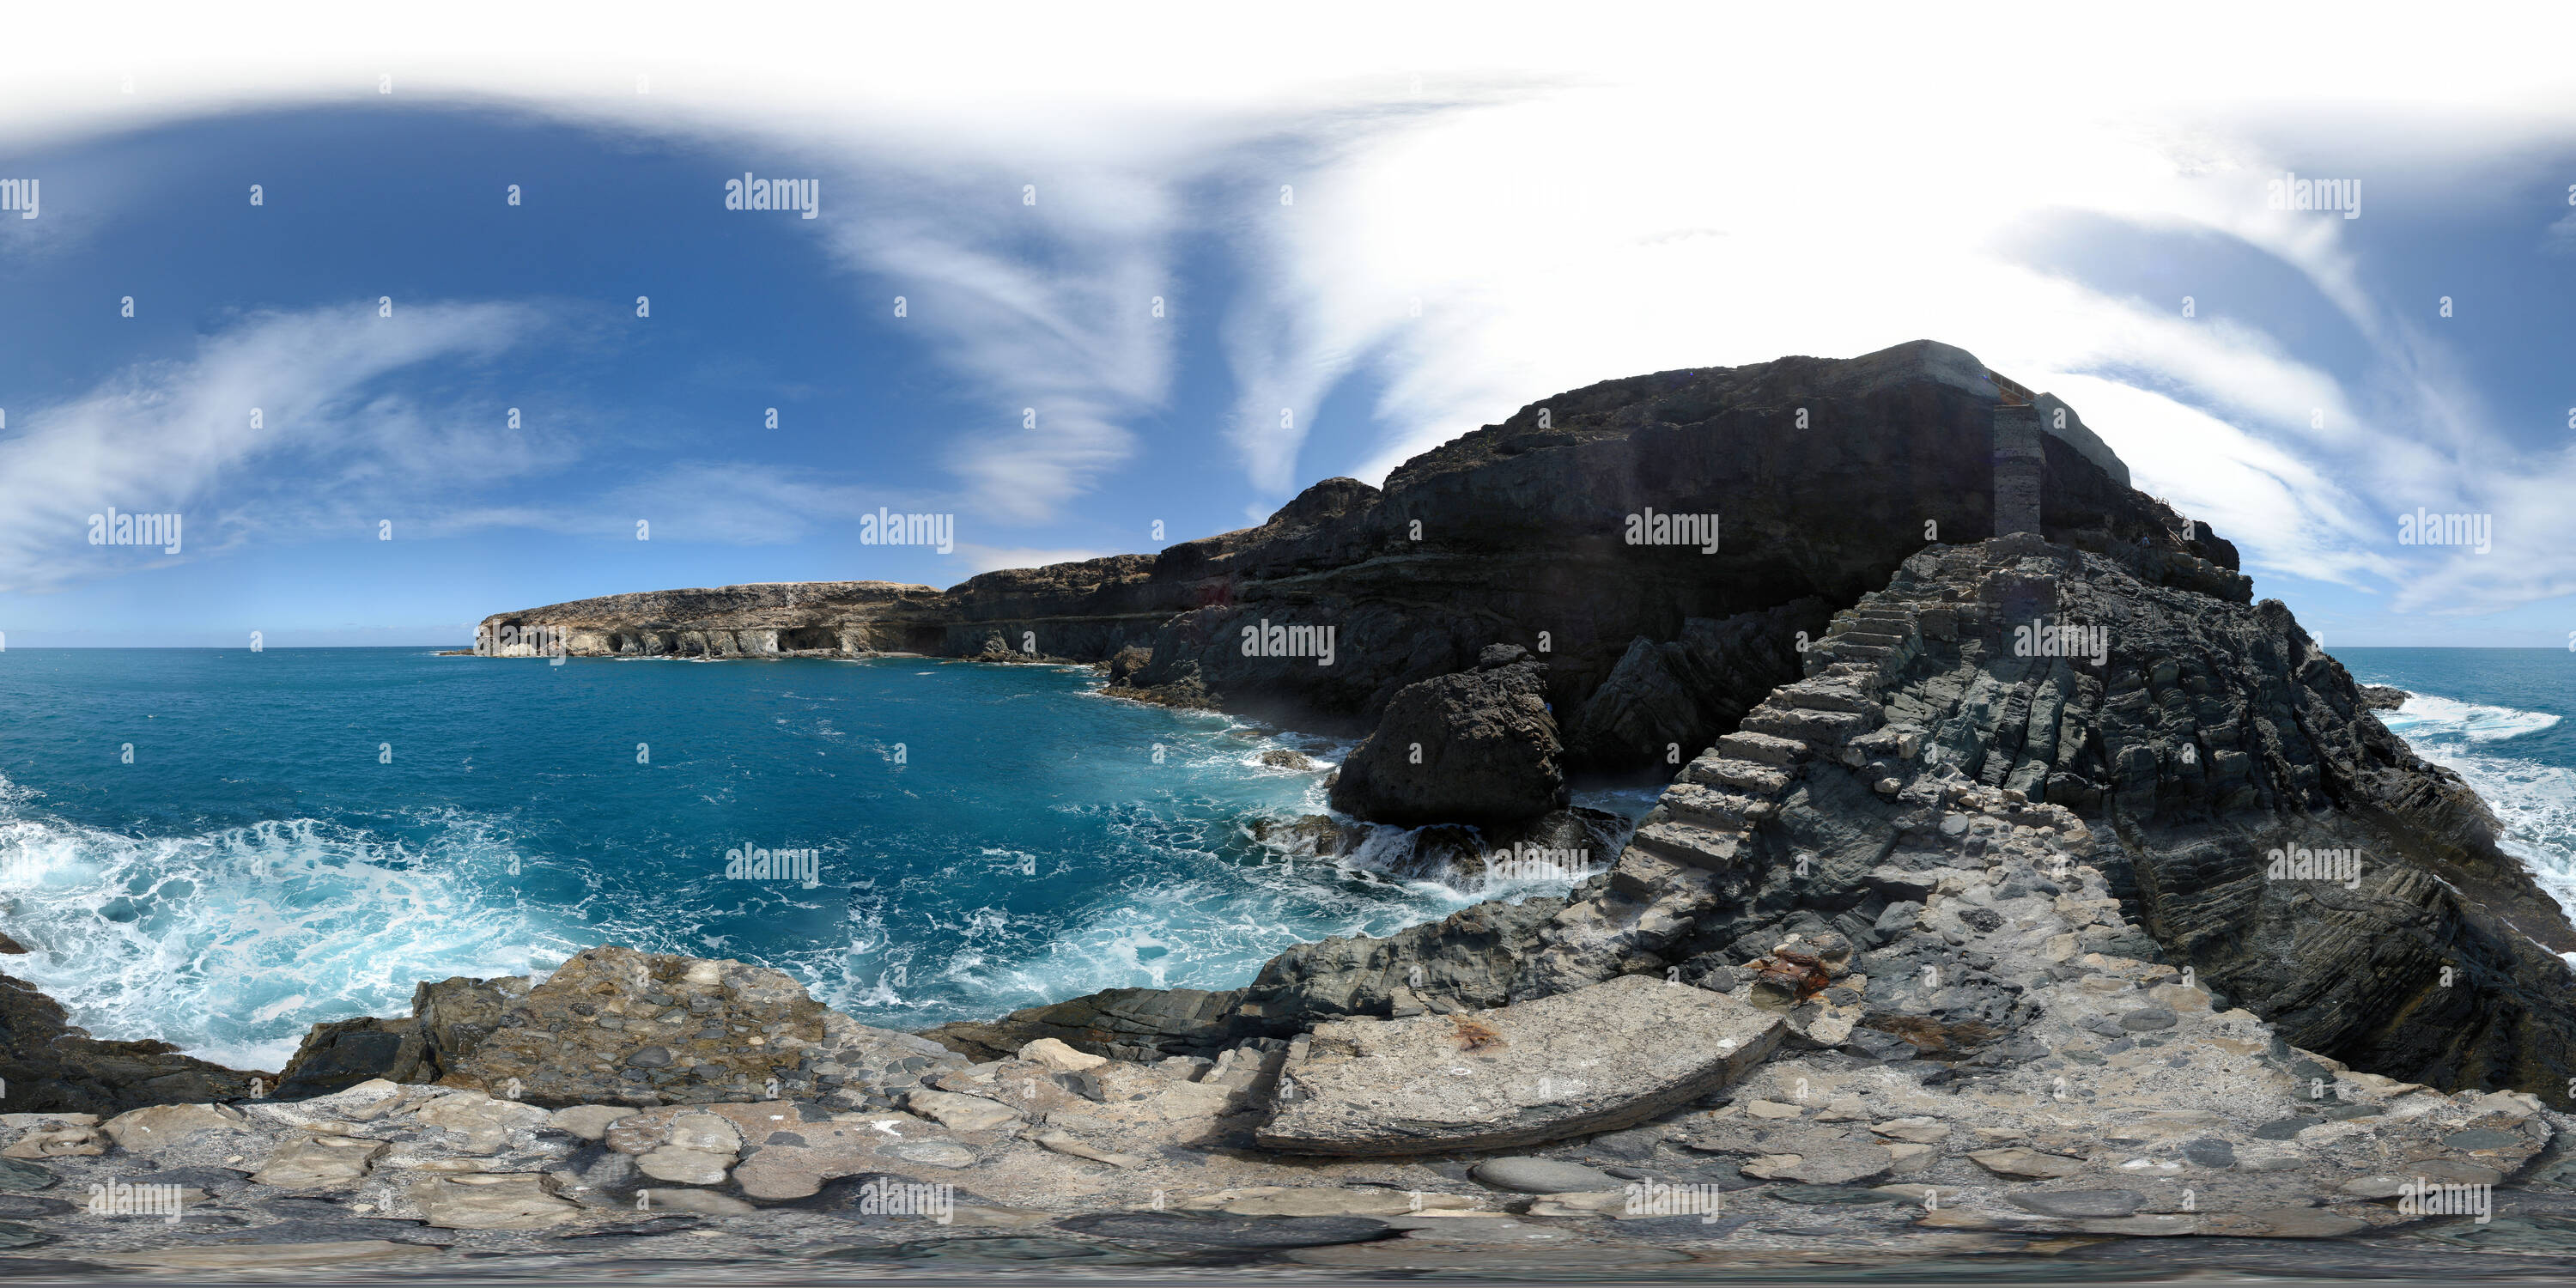 360 degree panoramic view of Caleta Negra